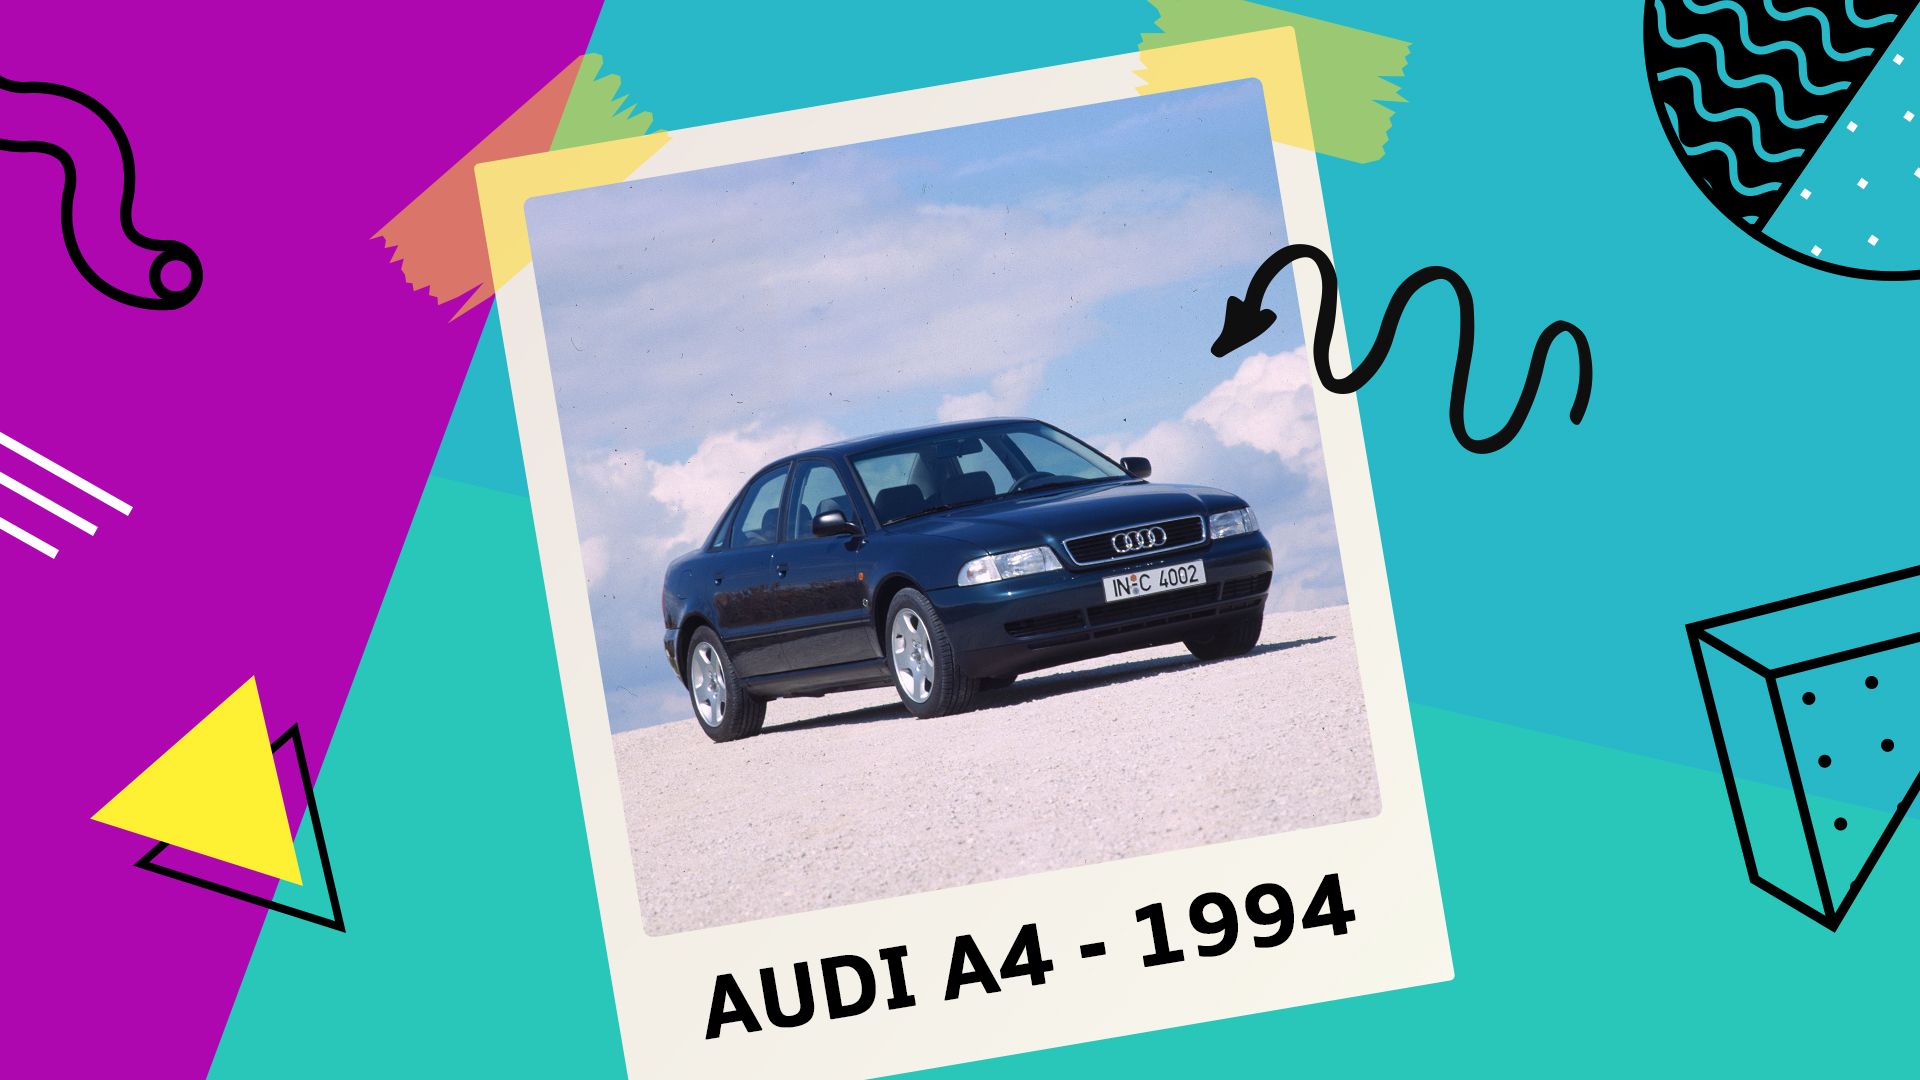 AUDI A4 - Cars Company